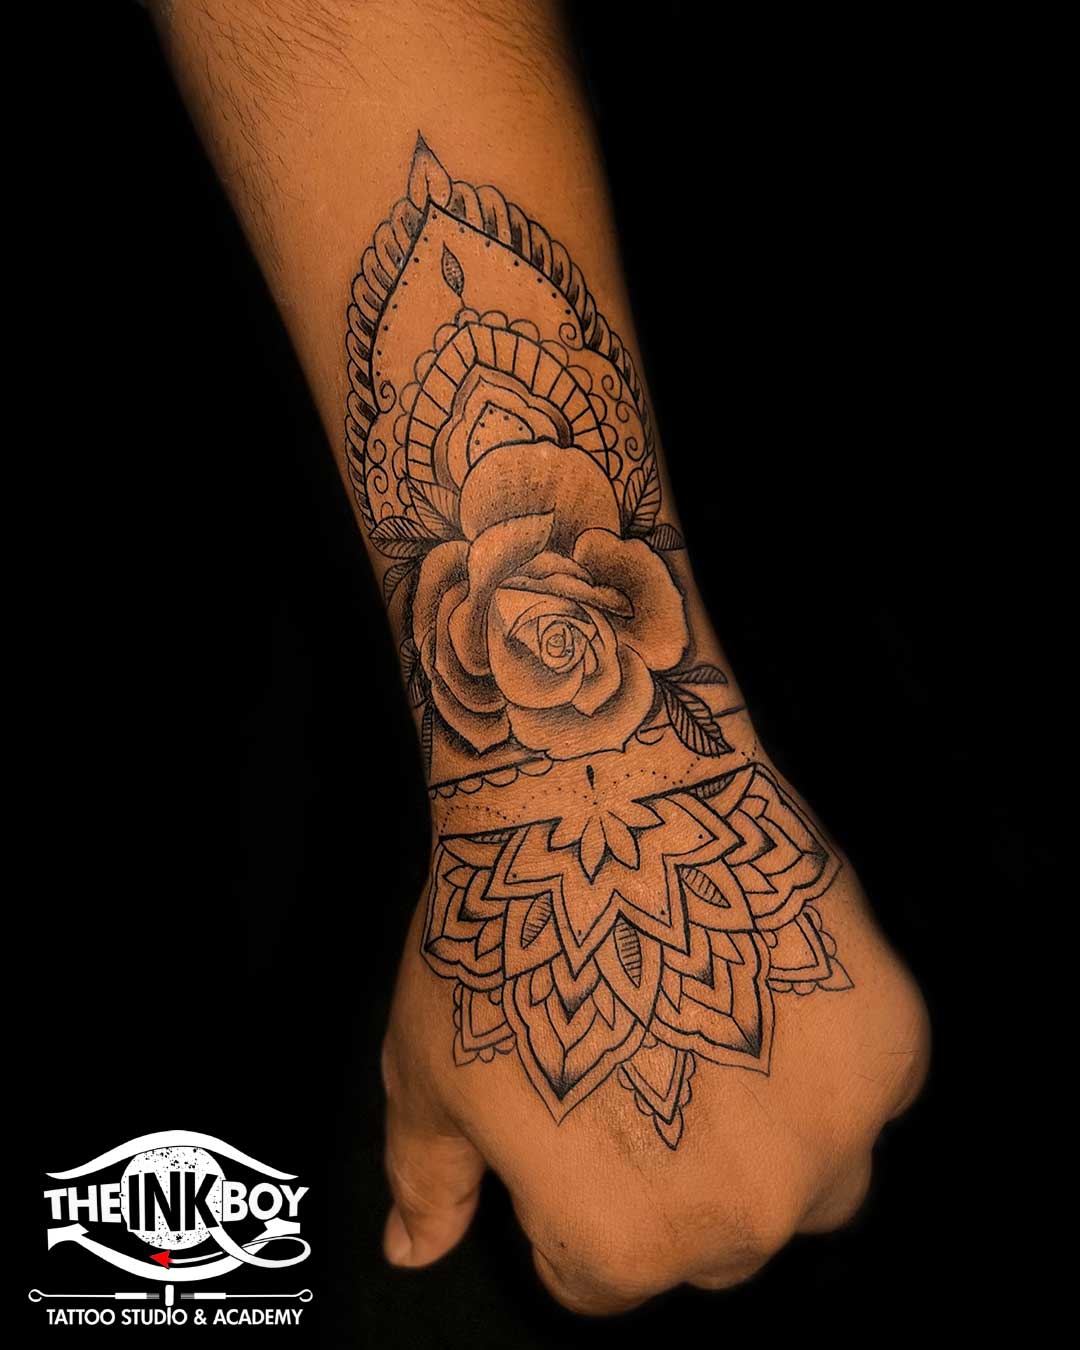 Mandala Tattoo Meaning & Its Beautiful Design - Tattoo Studio Bali